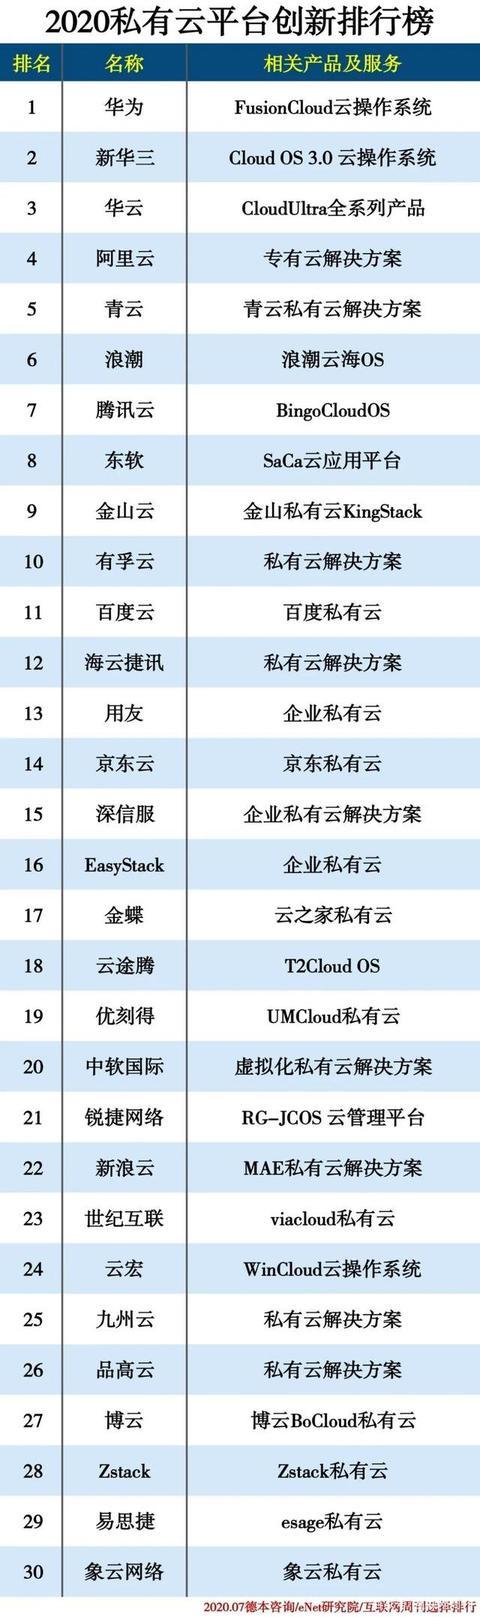 2020国内私有云排名_2020中国私有云企业排名榜单最新出炉